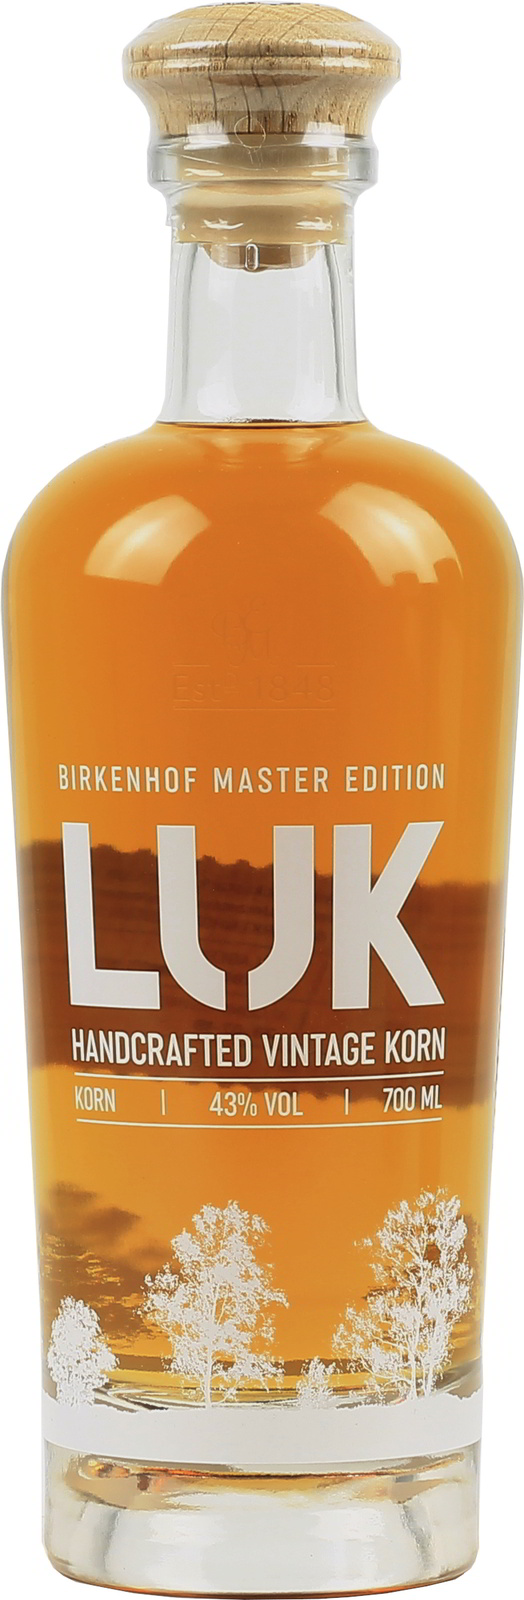 Birkenhof LUK Handcrafted Vintage Korn, exquisit